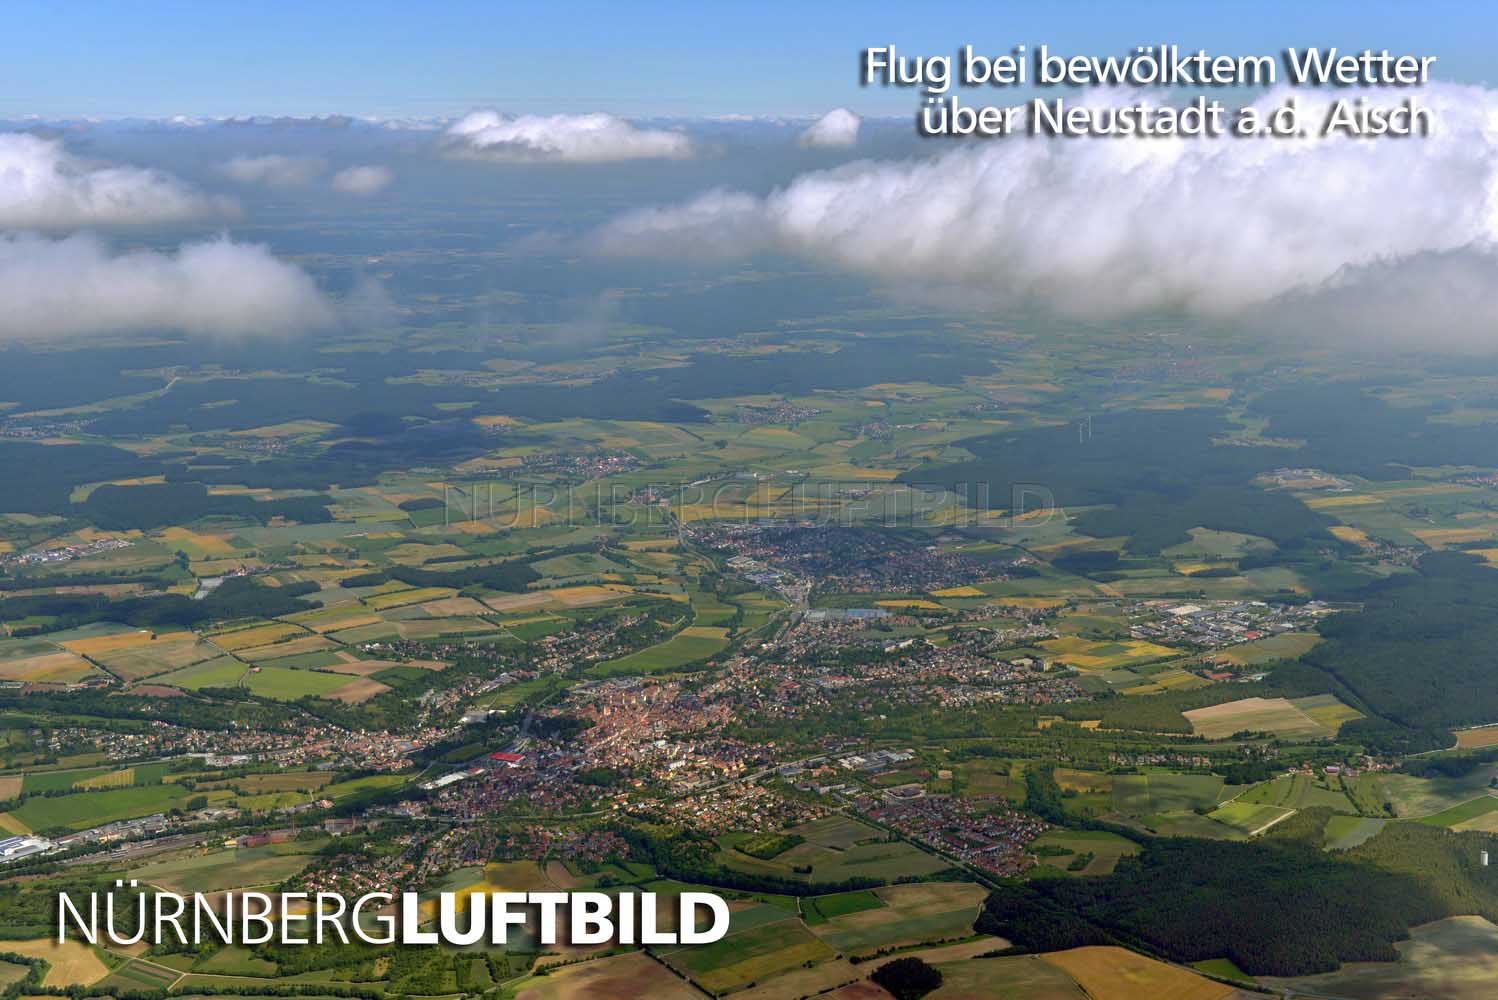 Flug bei bewölktem Wetter über Neustadt a.d. Aisch, Luftbild